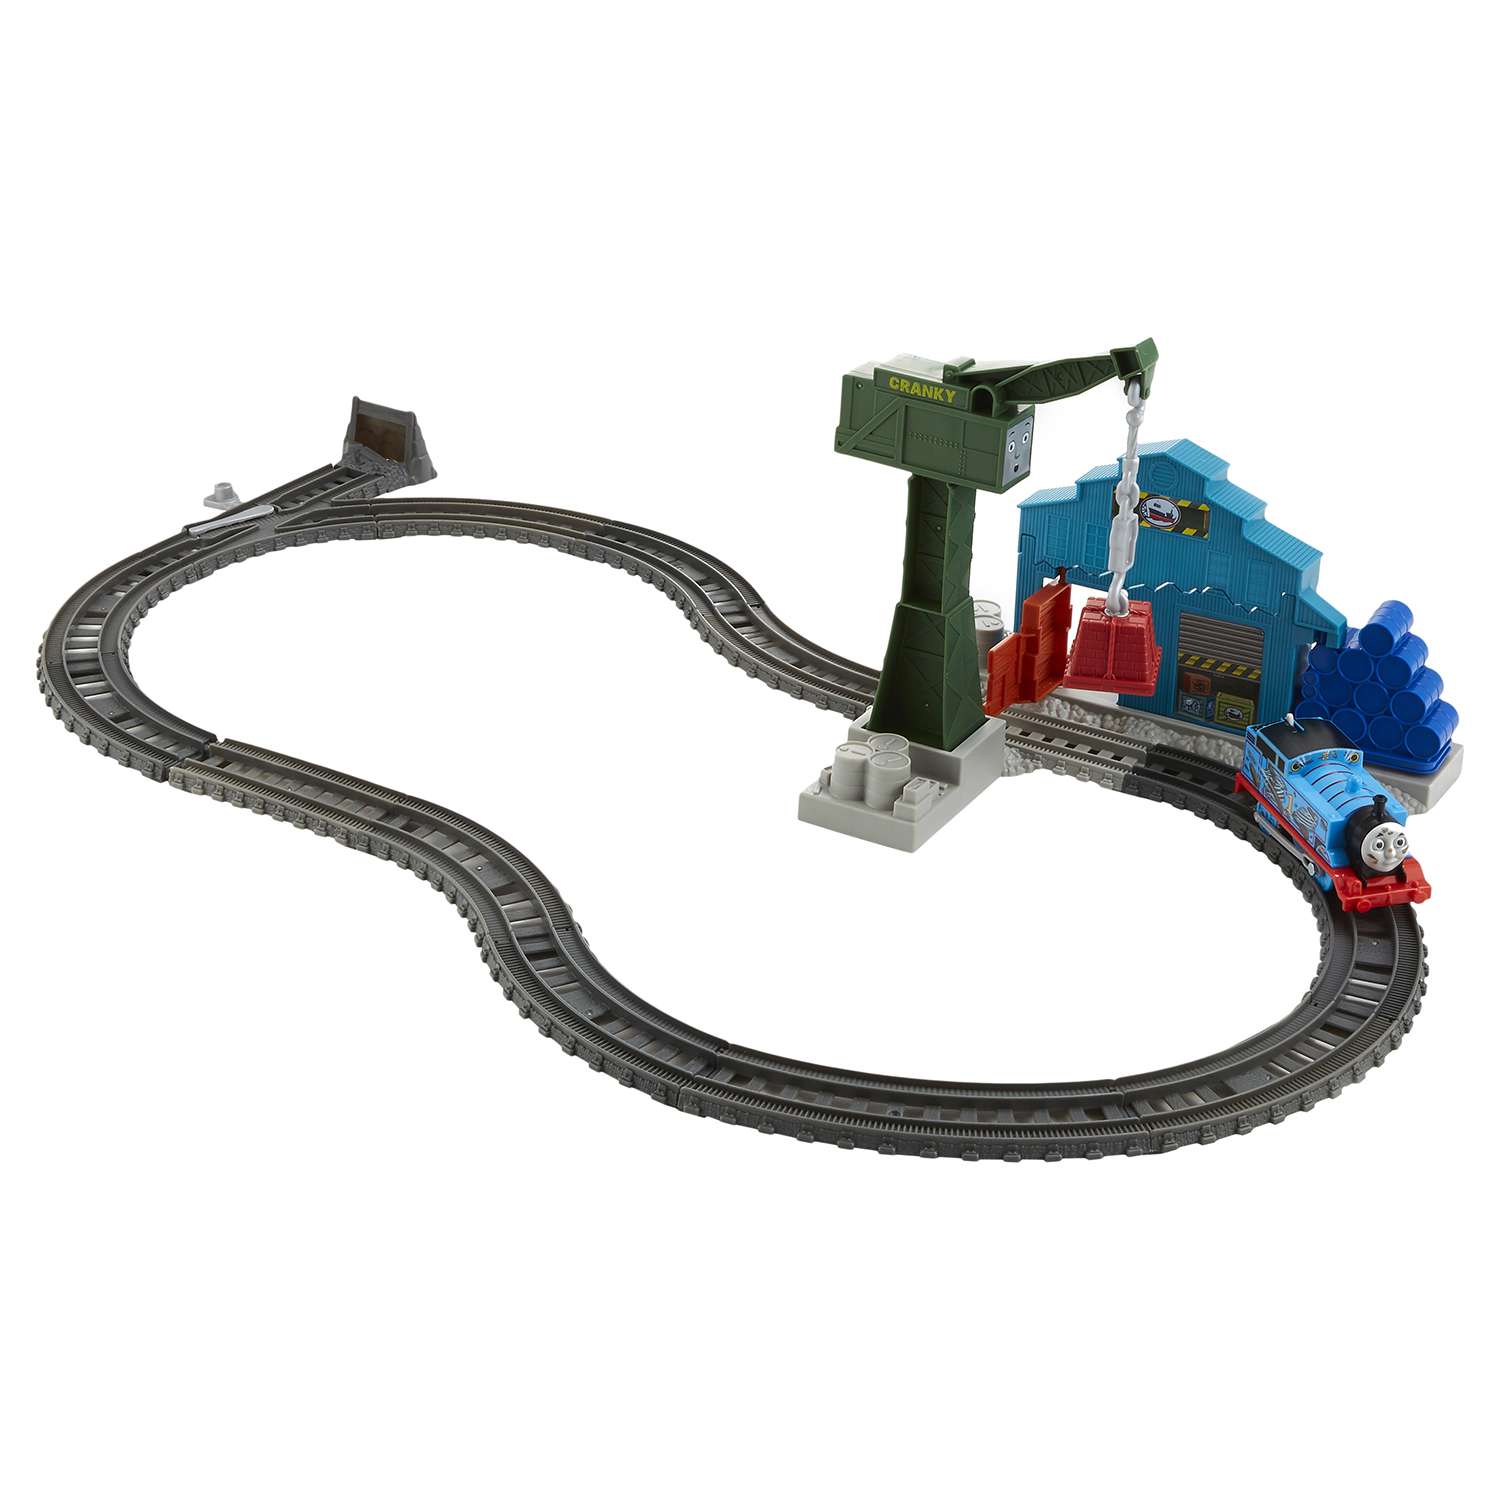 Игровой набор Thomas & Friends с паровозиком Томасом и подъемным краном Крэнки DVF73 - фото 7